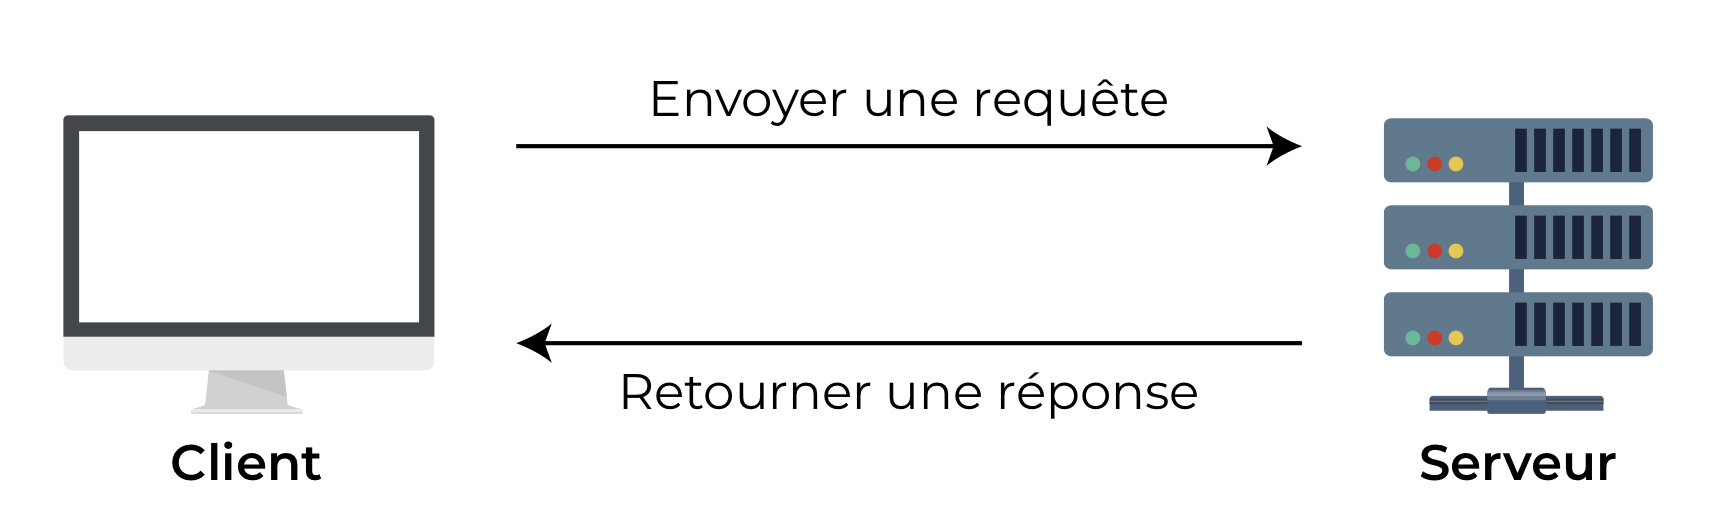 Une conversation typique entre client et serveur : à gauche l'ordinateur client envoie une requête au serveur à droite. Puis le serveur à droite retourne une réponse au client.